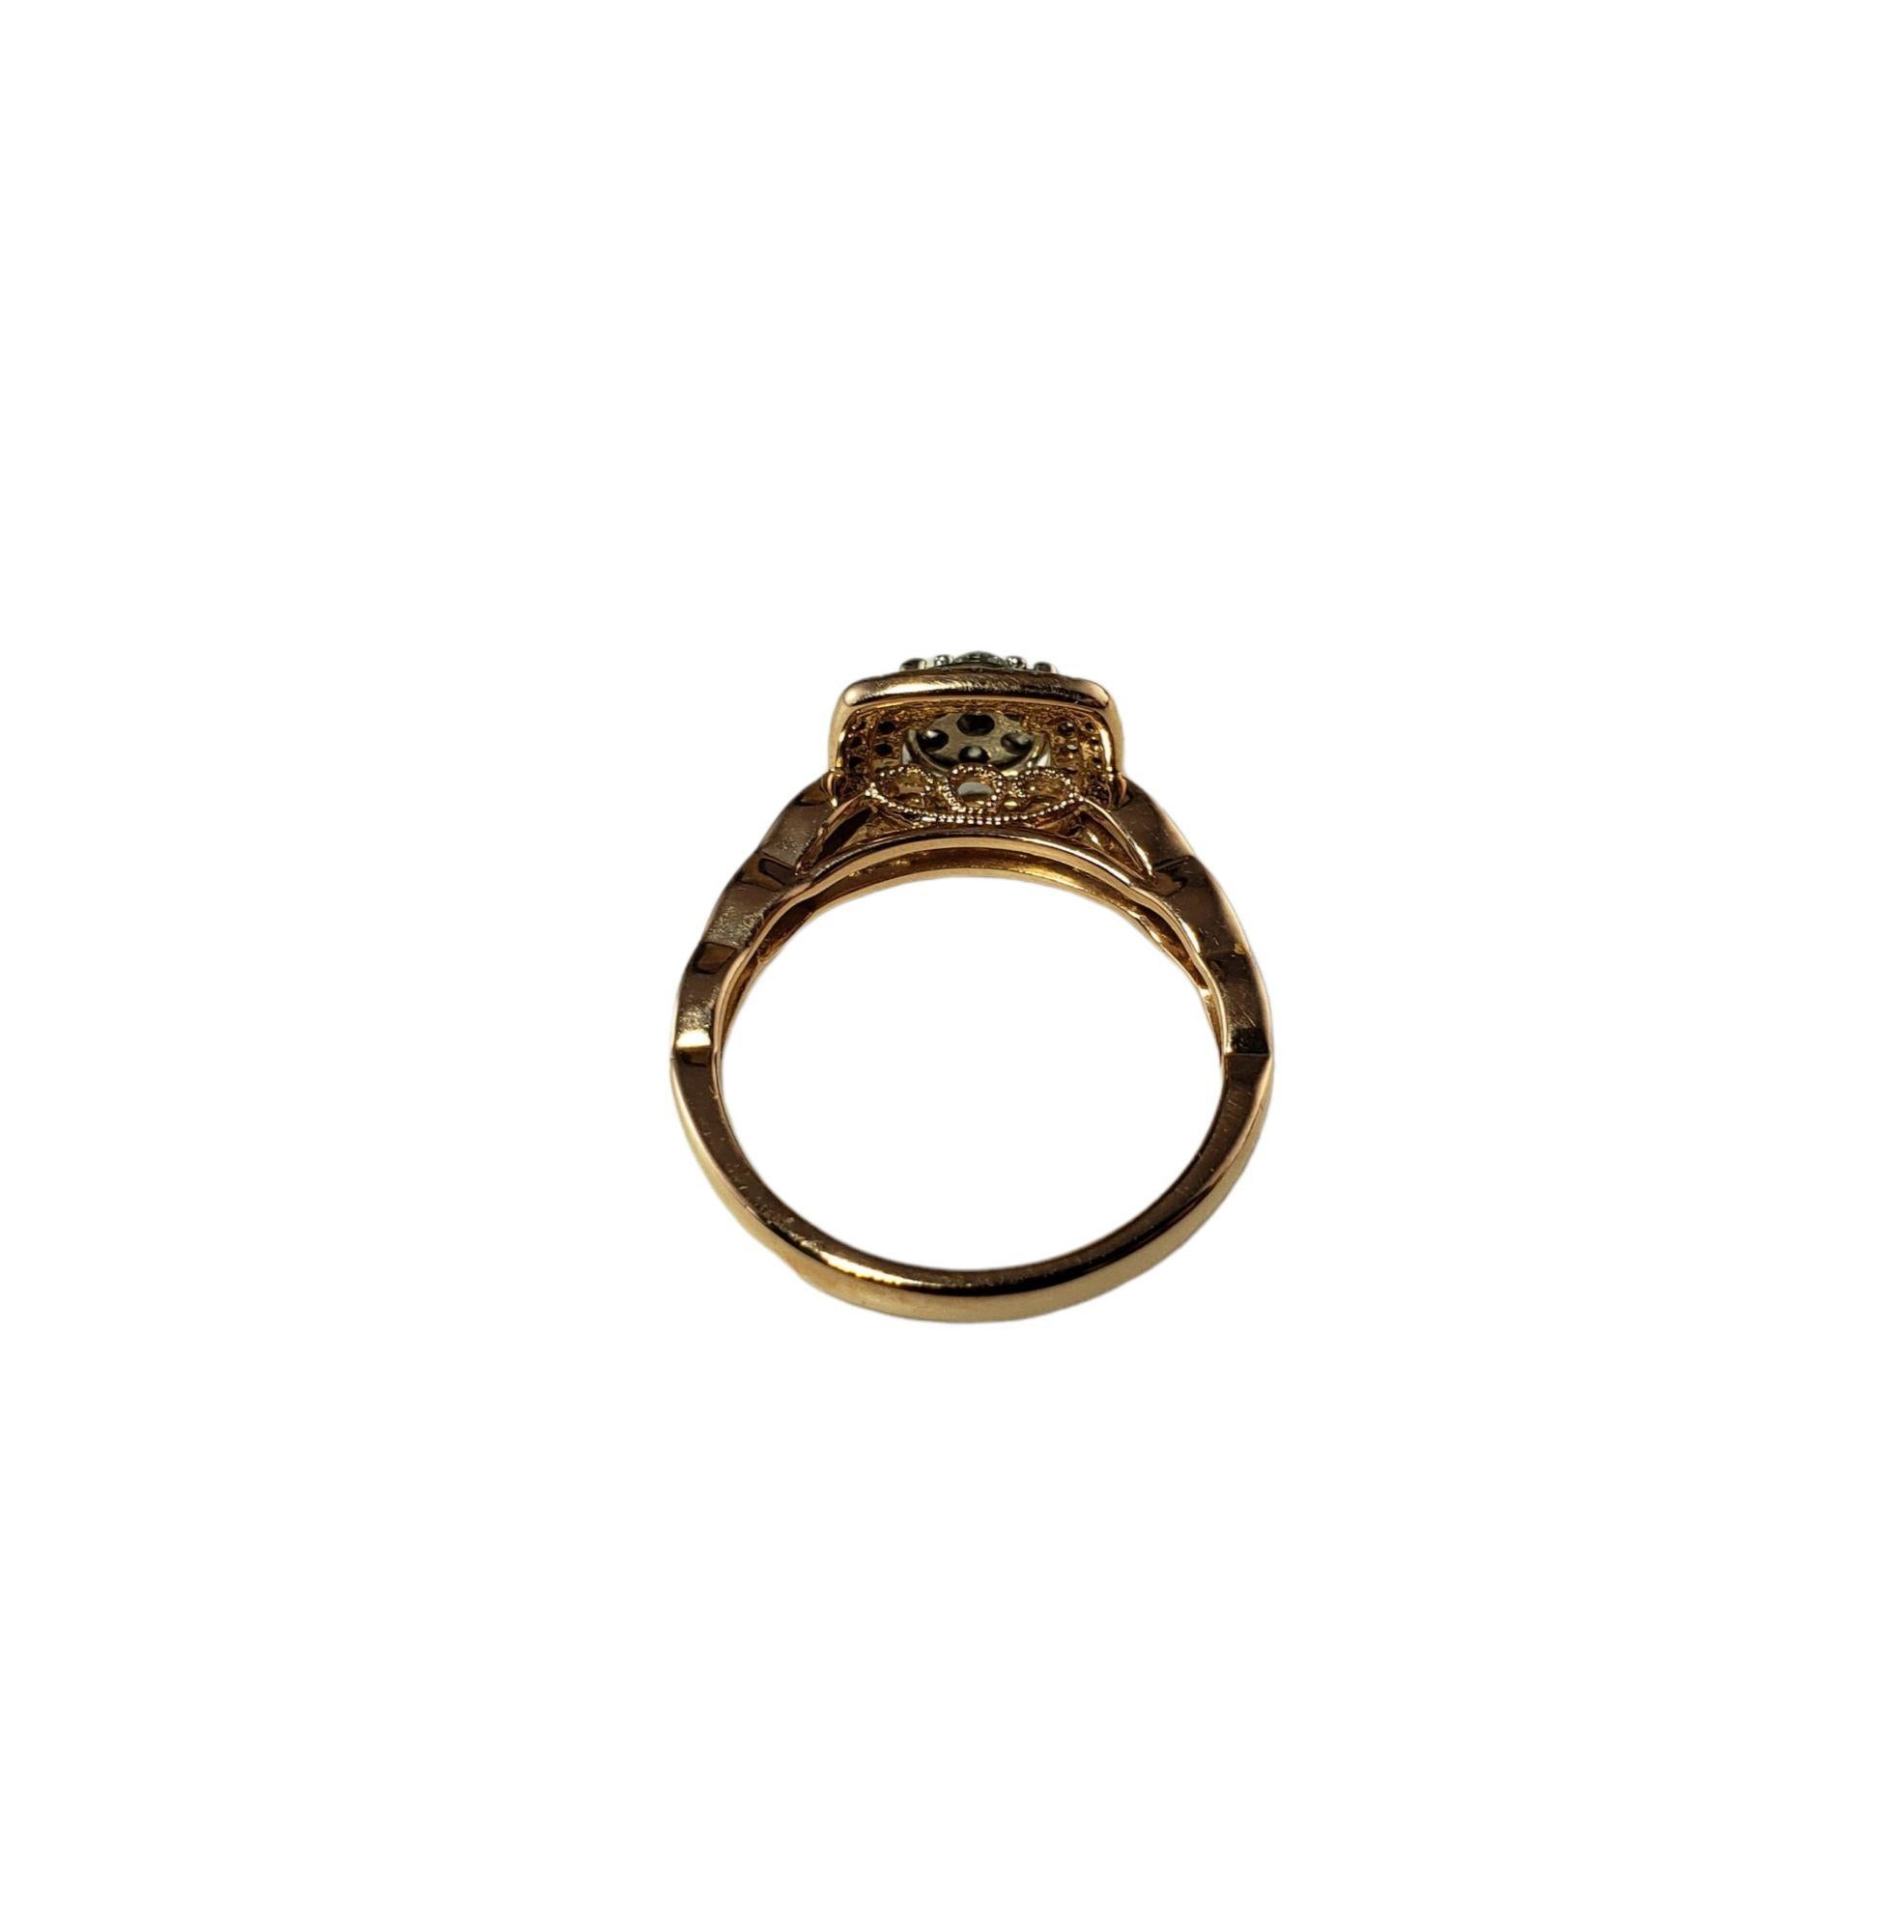 Vintage 14 Karat Rose Gold und Diamant Ring Größe 7-

Dieser funkelnde Ring ist mit 77 runden Diamanten im Brillantschliff besetzt, die in wunderschönes 14-karätiges Roségold gefasst sind. Breite: 12 mm. Schaft: 3 mm.

Ungefähres Gesamtgewicht der